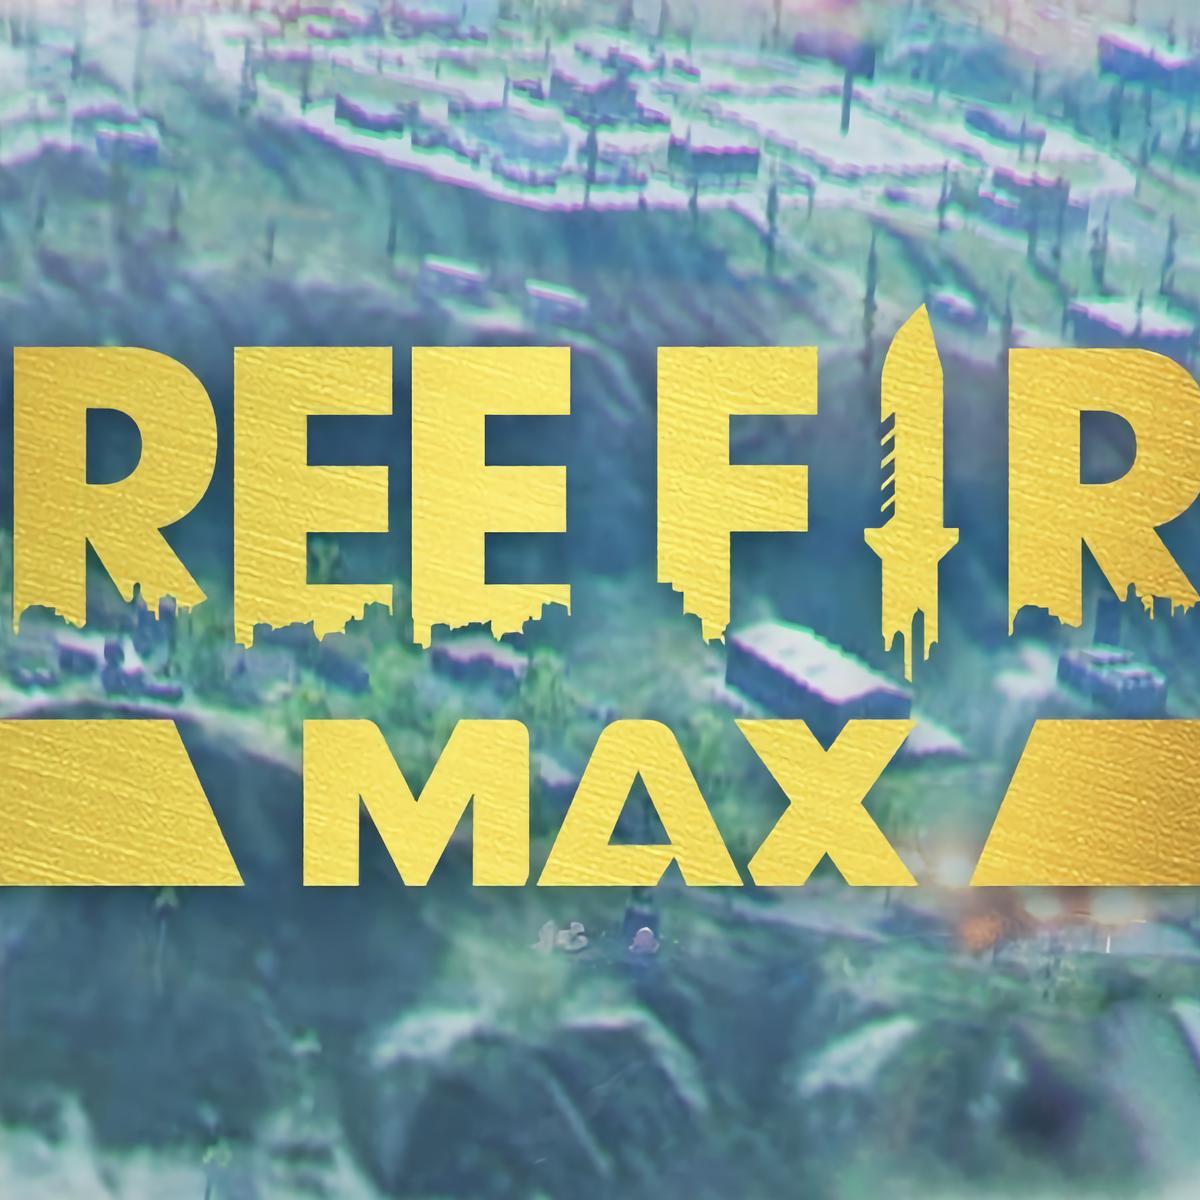 Free Fire Max ya disponible: Cómo descargarlo, requisitos y